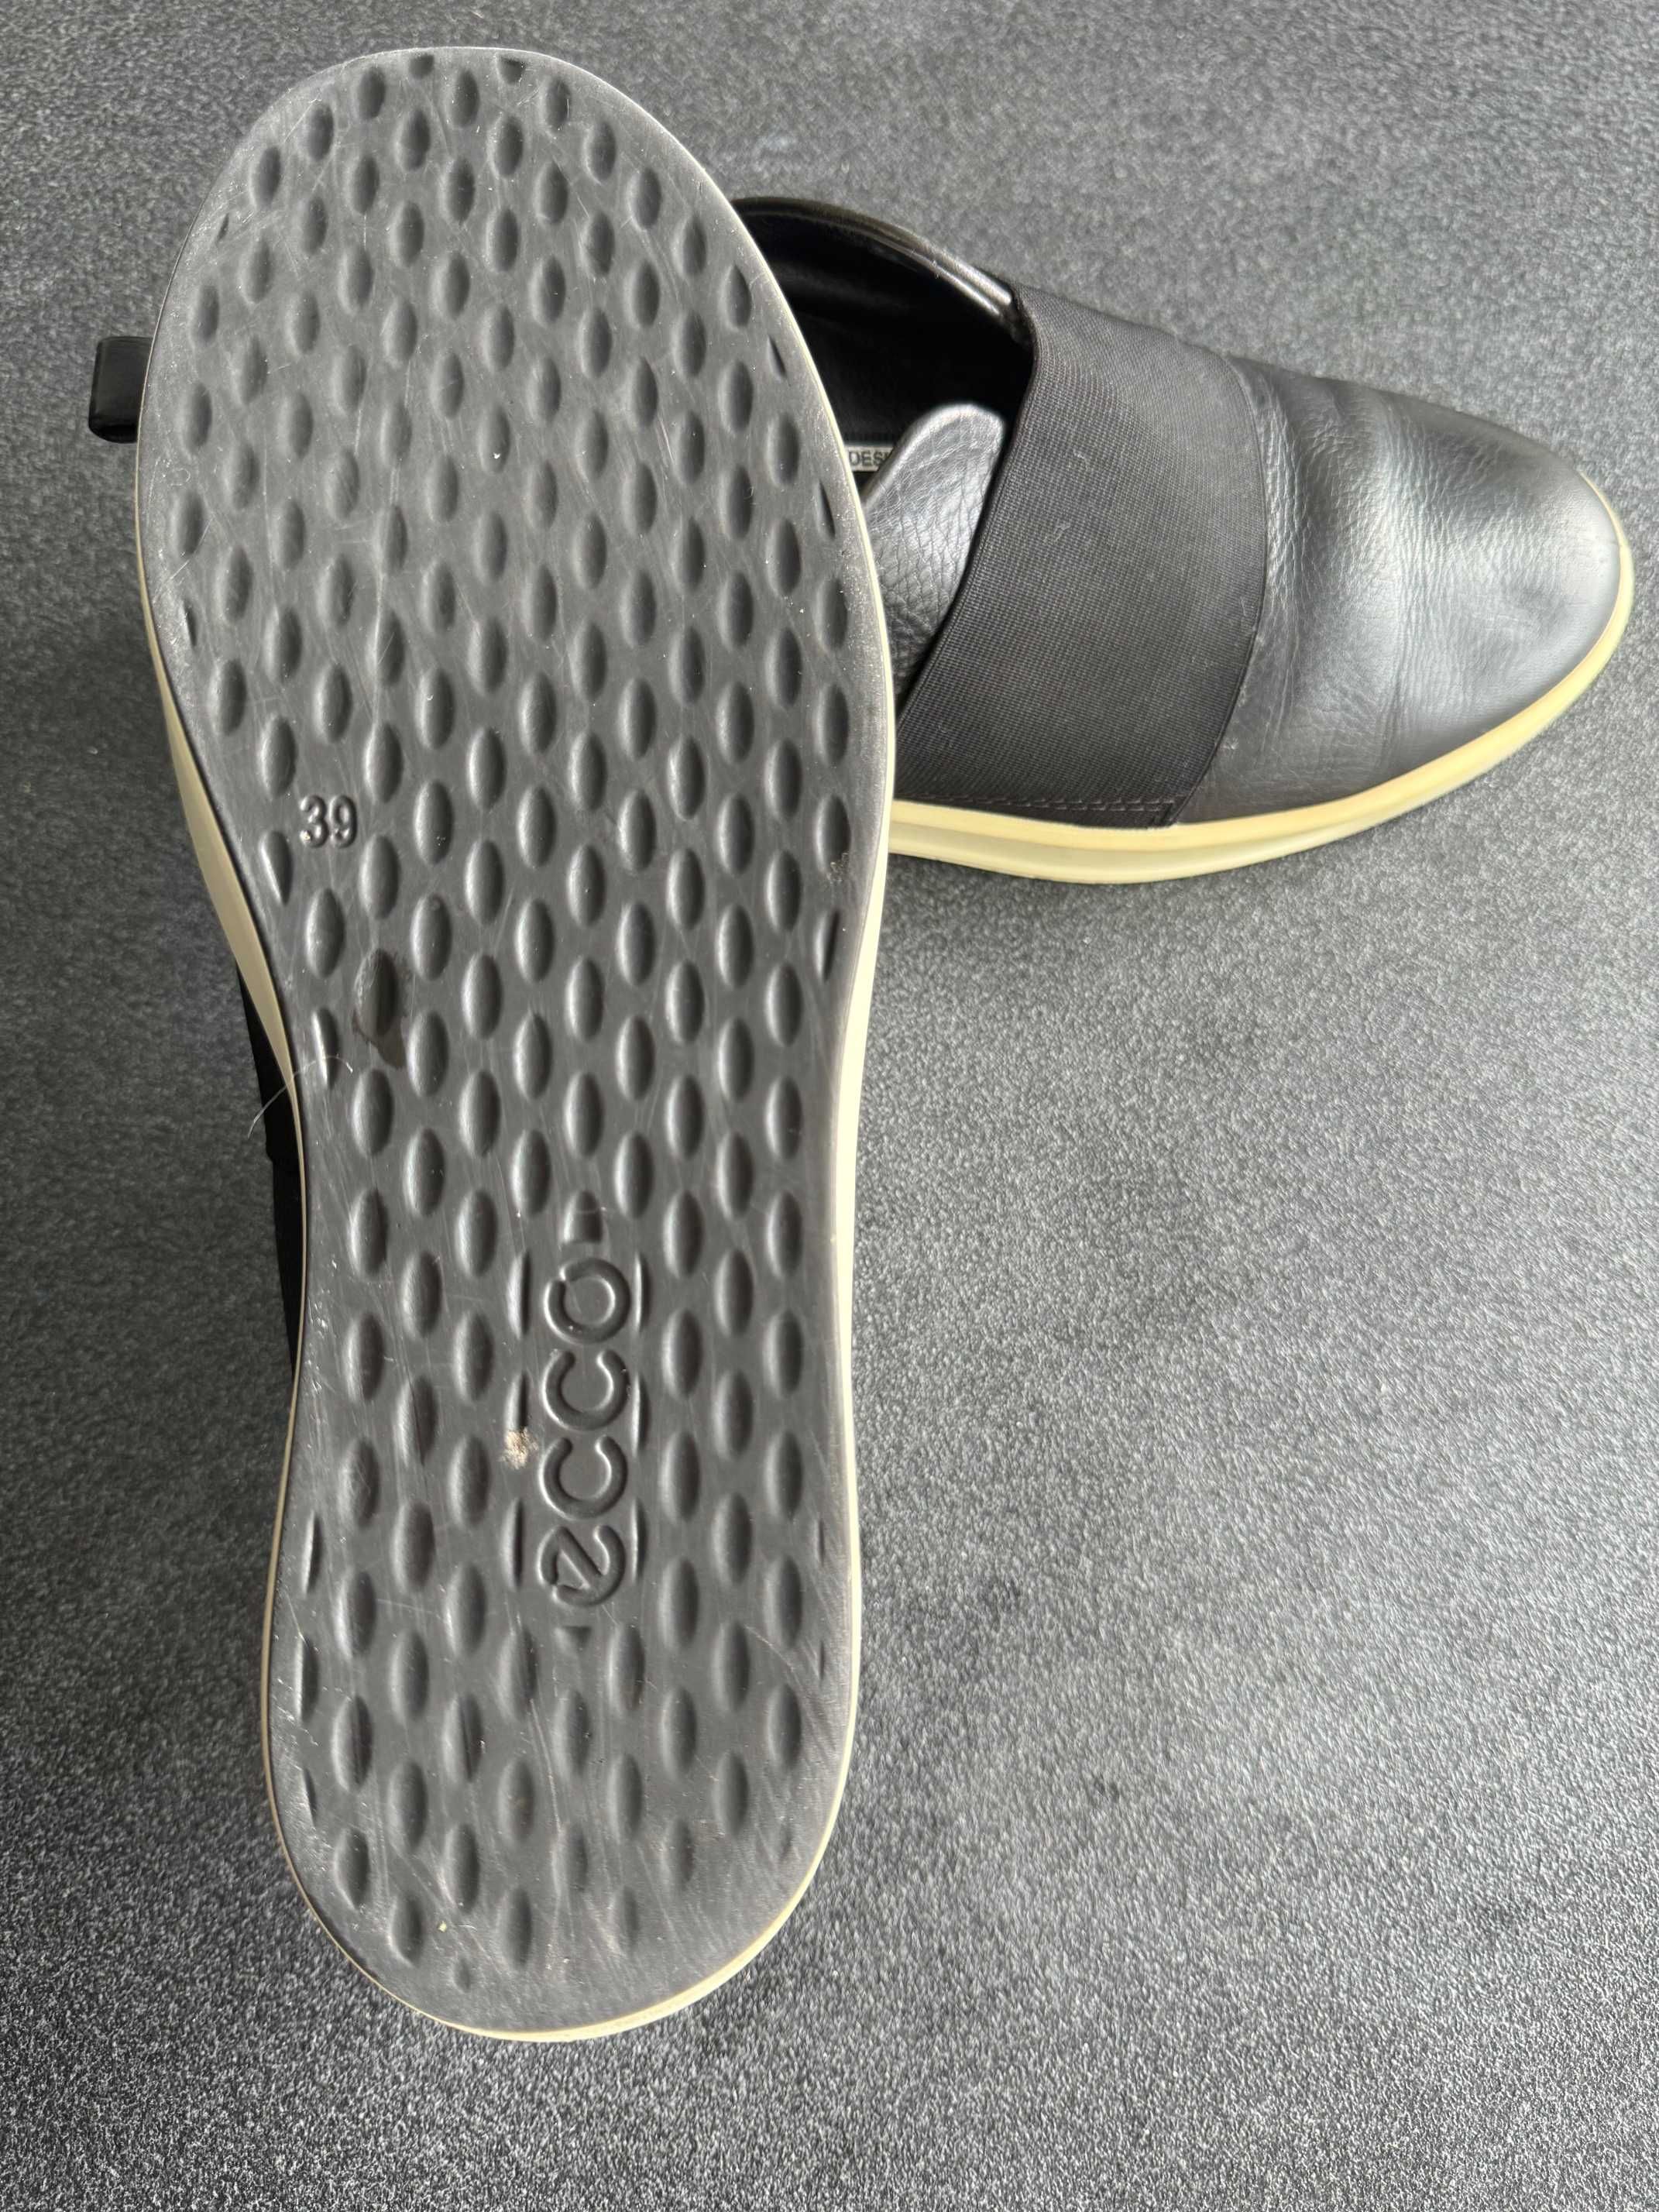 Espadrile / pantofi ECCO culoare negru masura 39